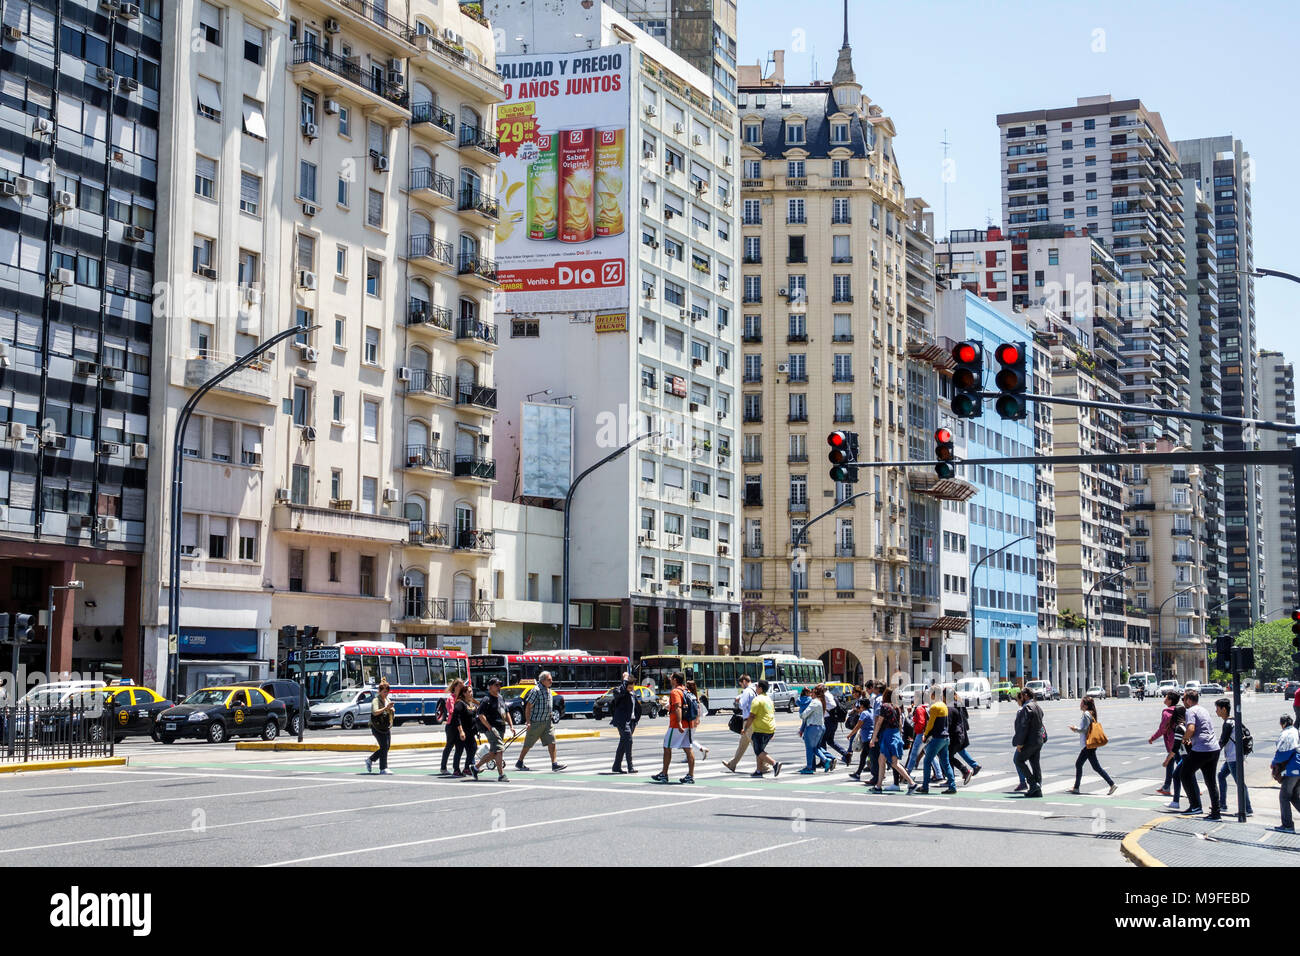 Buenos Aires Argentina,Avenida del Libertador,scène de rue,bâtiments,piétons,passage,lumière rouge,taxi,bus,hispanique,ARG171128156 Banque D'Images